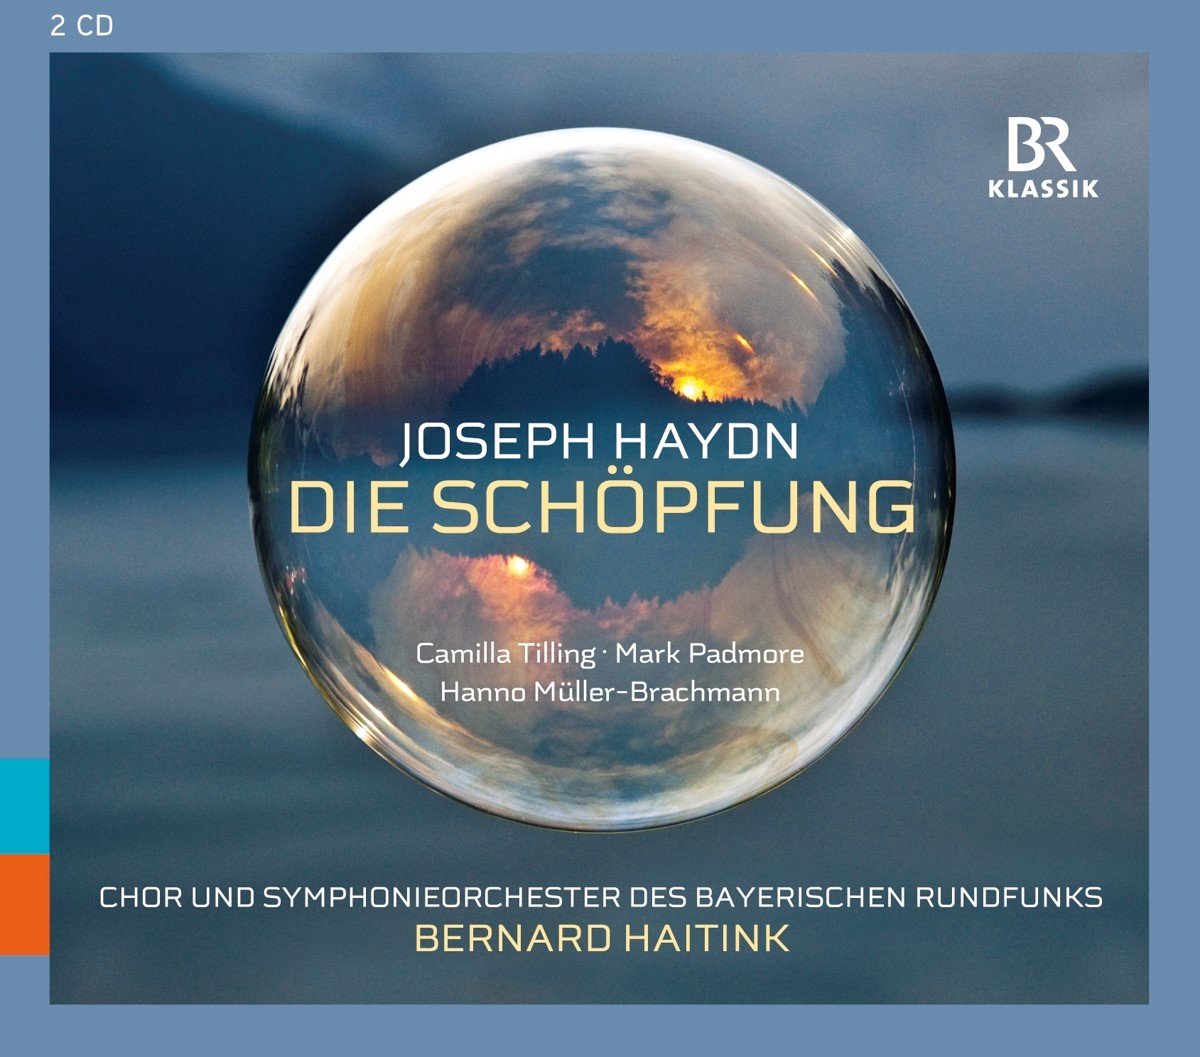 Symphonieorchester Des Bayerischen Rundfunks, Bernard Haitink - Haydn: Die Schöpfung (The Creation) (2 CD) - Symphonieorchester Des Bayerischen Rundfunks, Bernard Haitink